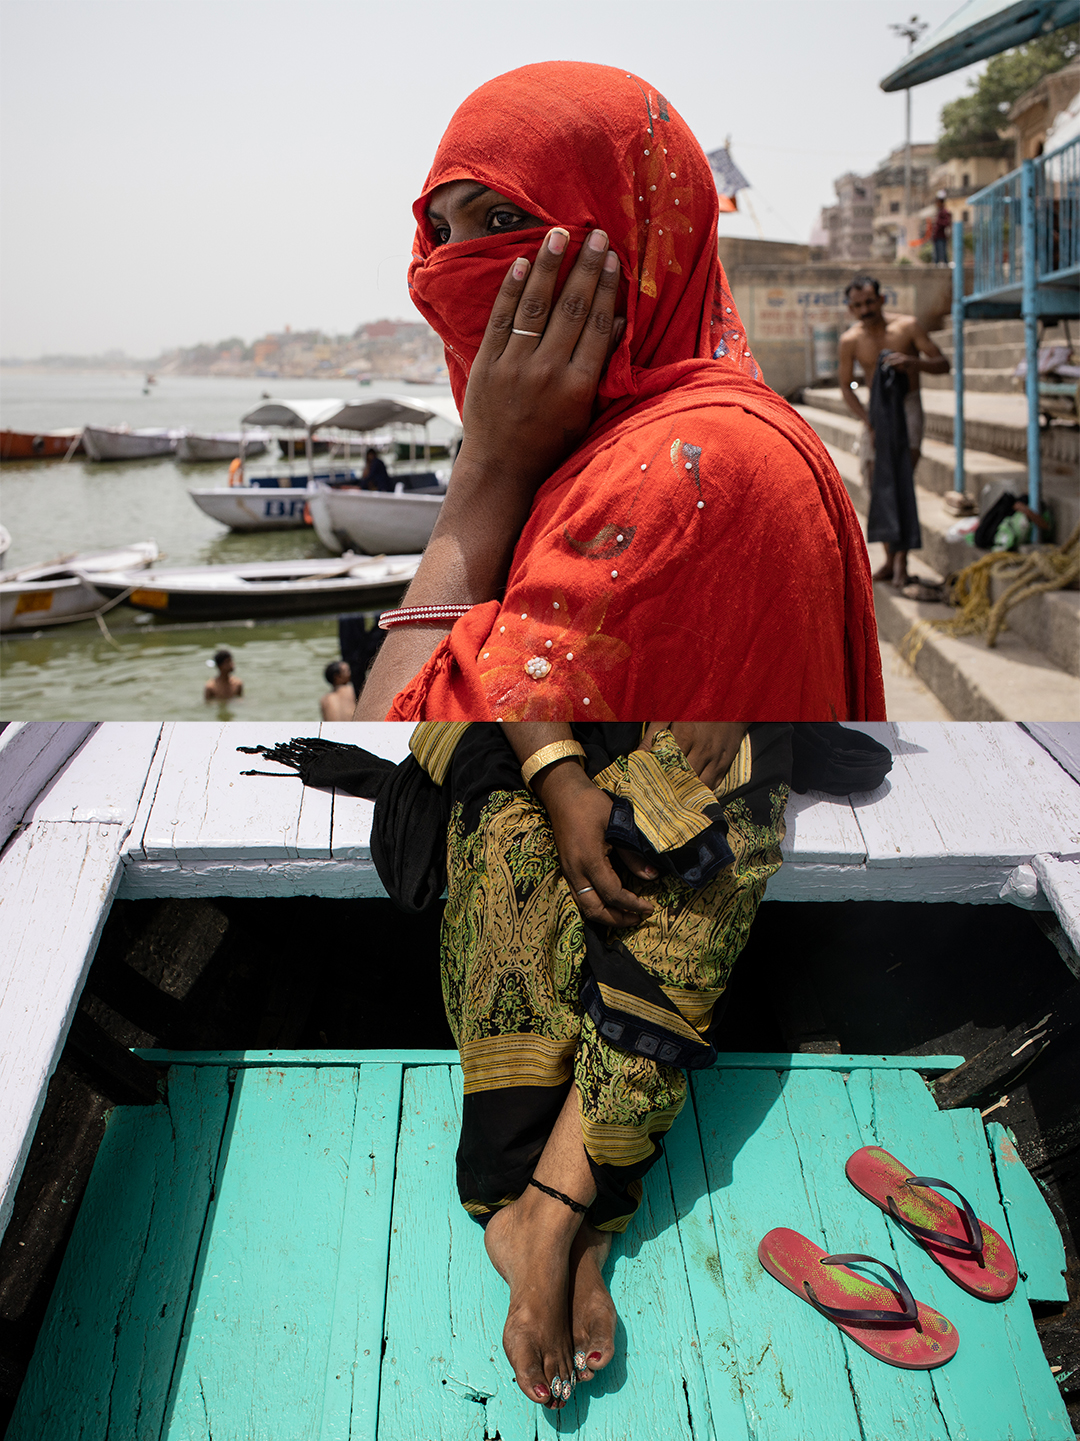 Acima, Rupaa aguarda para subir em um barco no Rio Ganges, em Varanasi. Ela esconde o rosto com um lenço sempre que circula em áreas movimentadas da cidade // Abaixo, detalhes da roupa e adereços de Muskan, típicos da cultura indiana. As Hijras usam Sari como símbolo e afirmação de sua identidade feminina